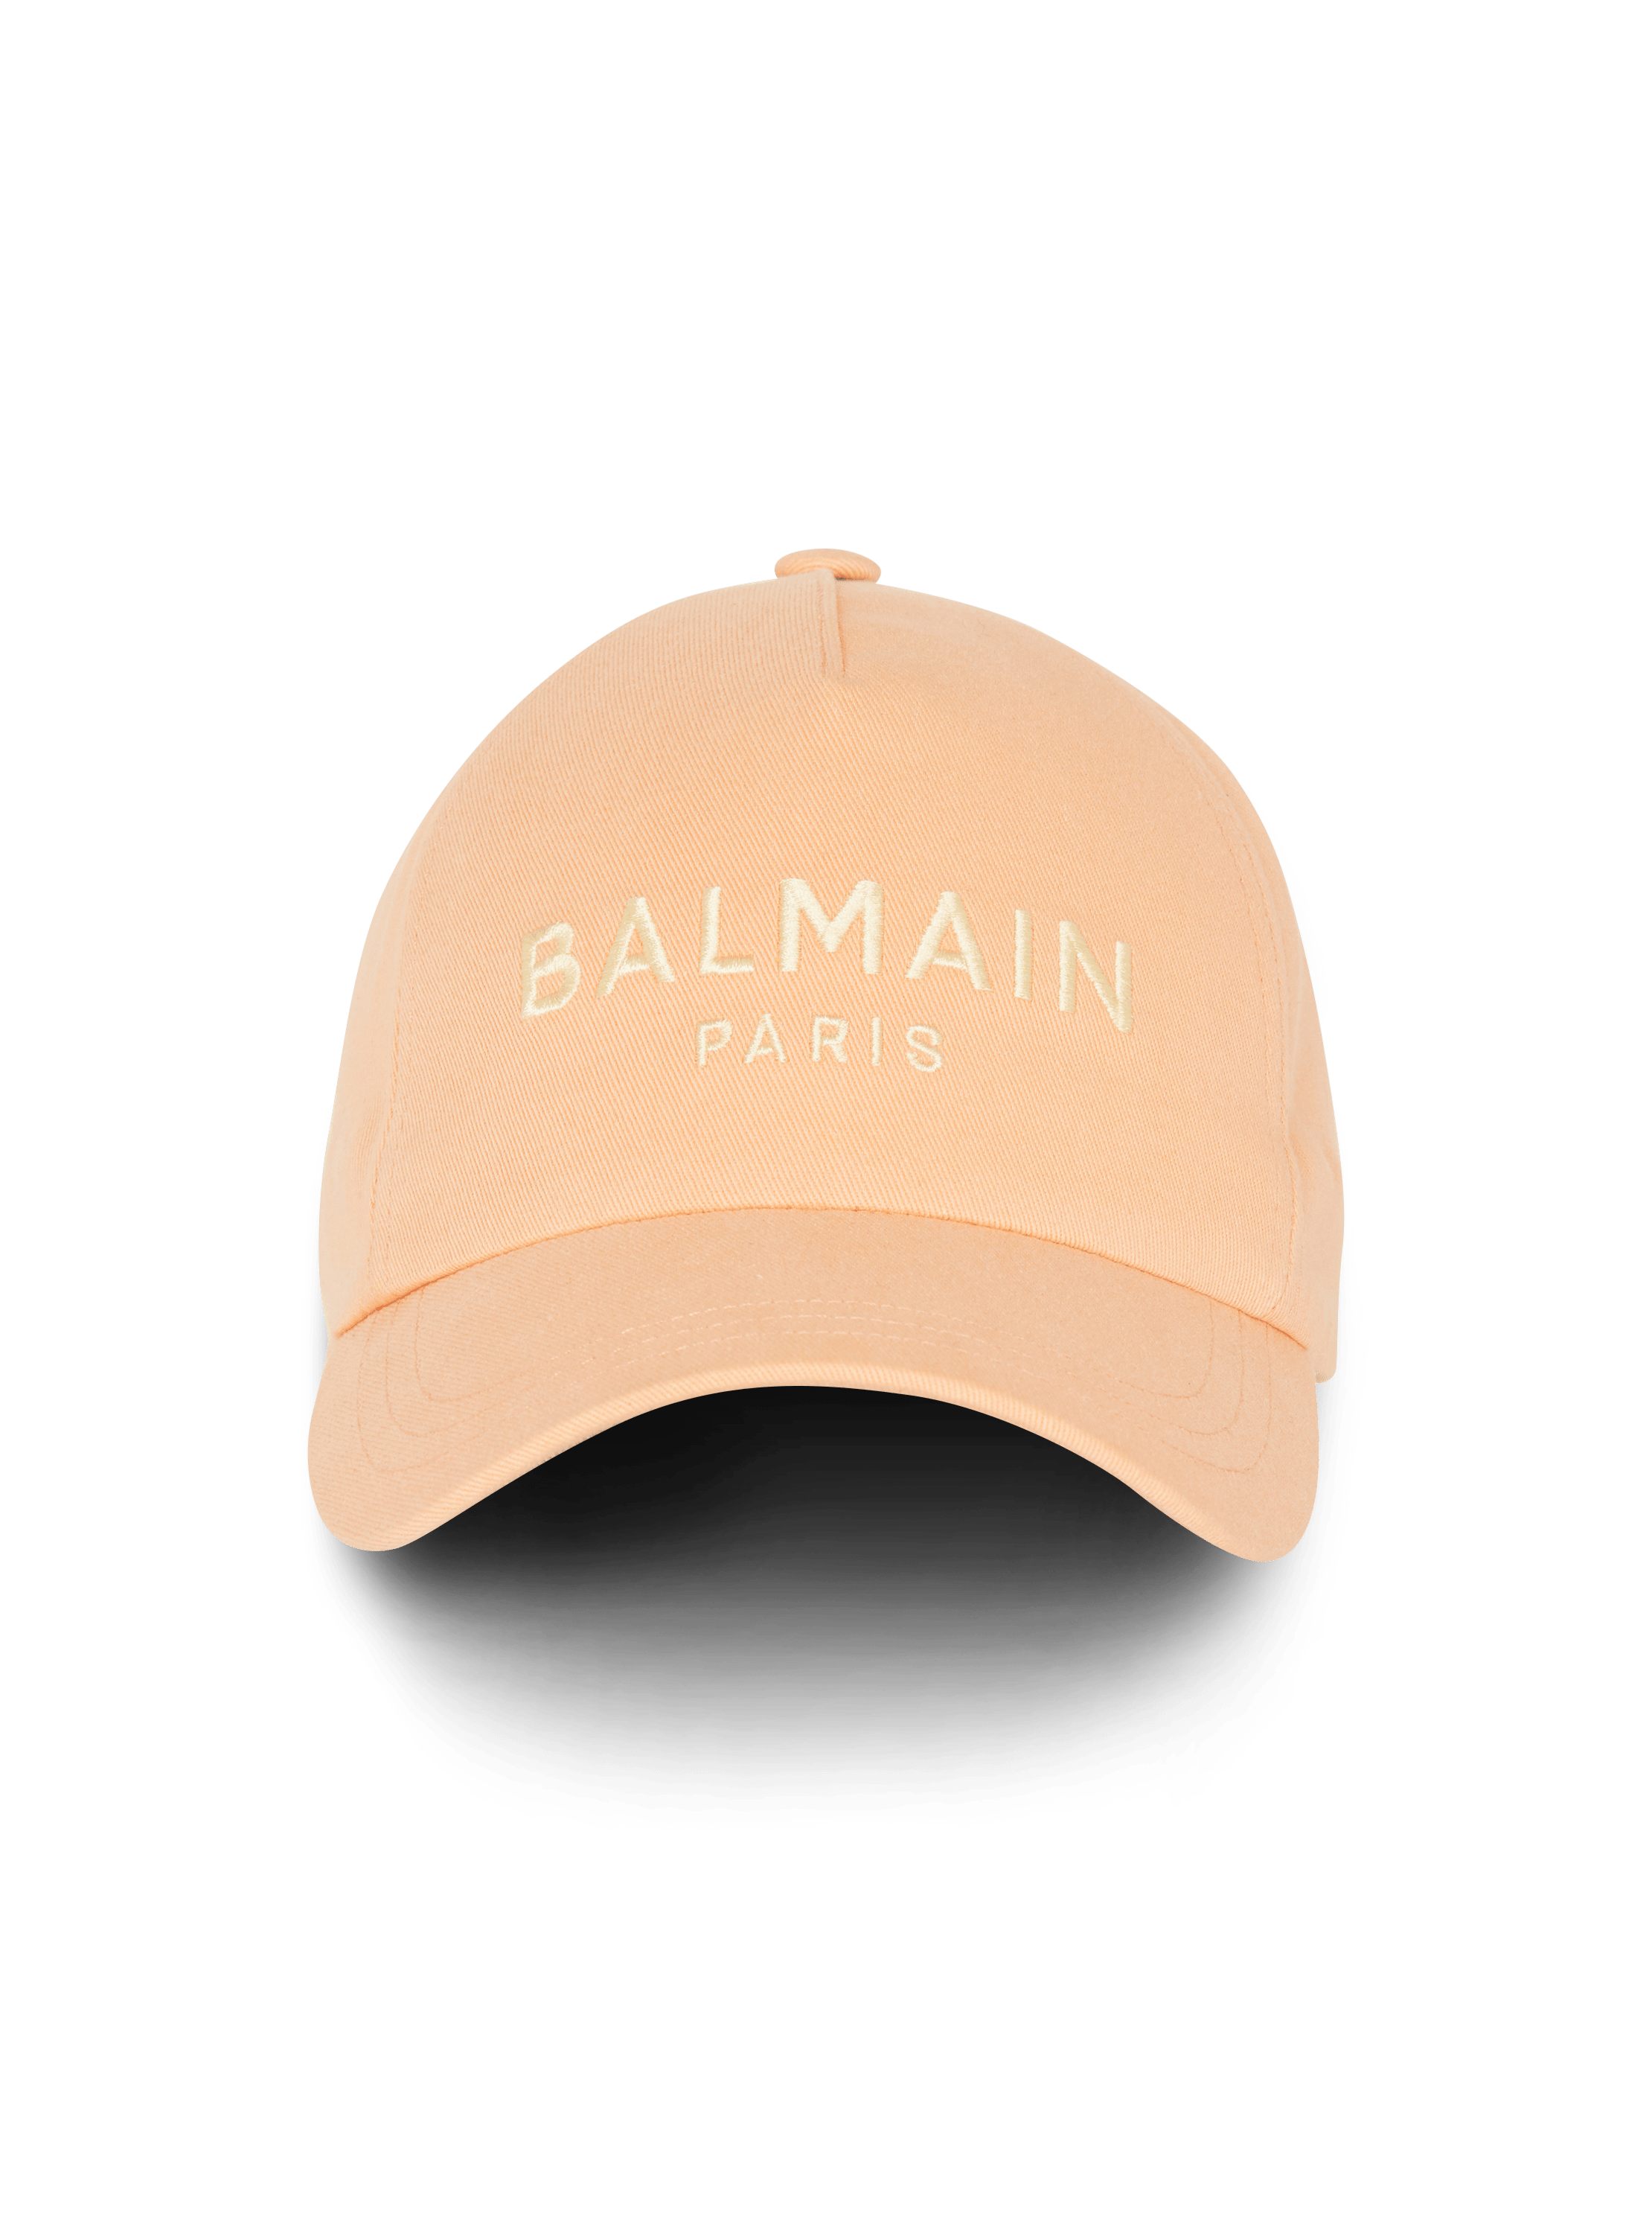 Balmain Paris刺绣鸭舌帽